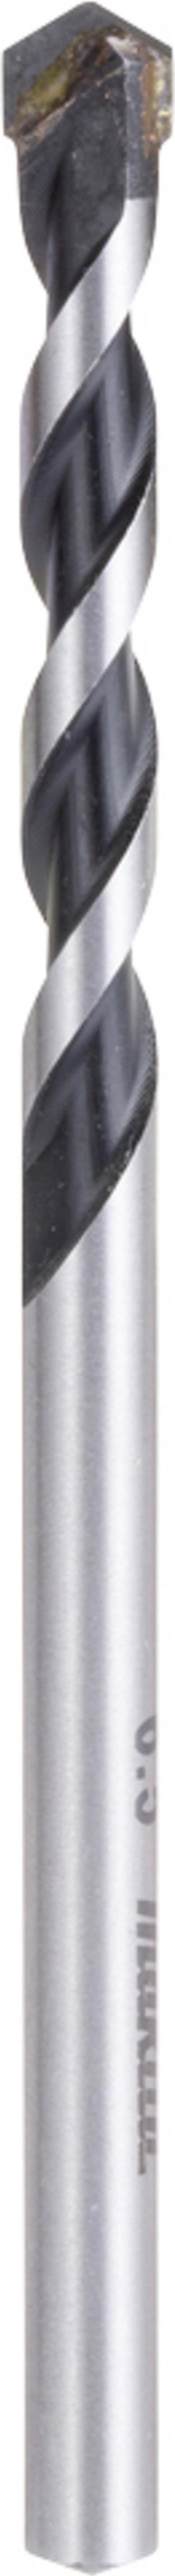 Makita E-11019 Hartmetall Mehrzweckbohrer 1 Stück 6.5 mm Gesamtlänge 100 mm Schnellspannbohrfutter 1 St. (E-11019)